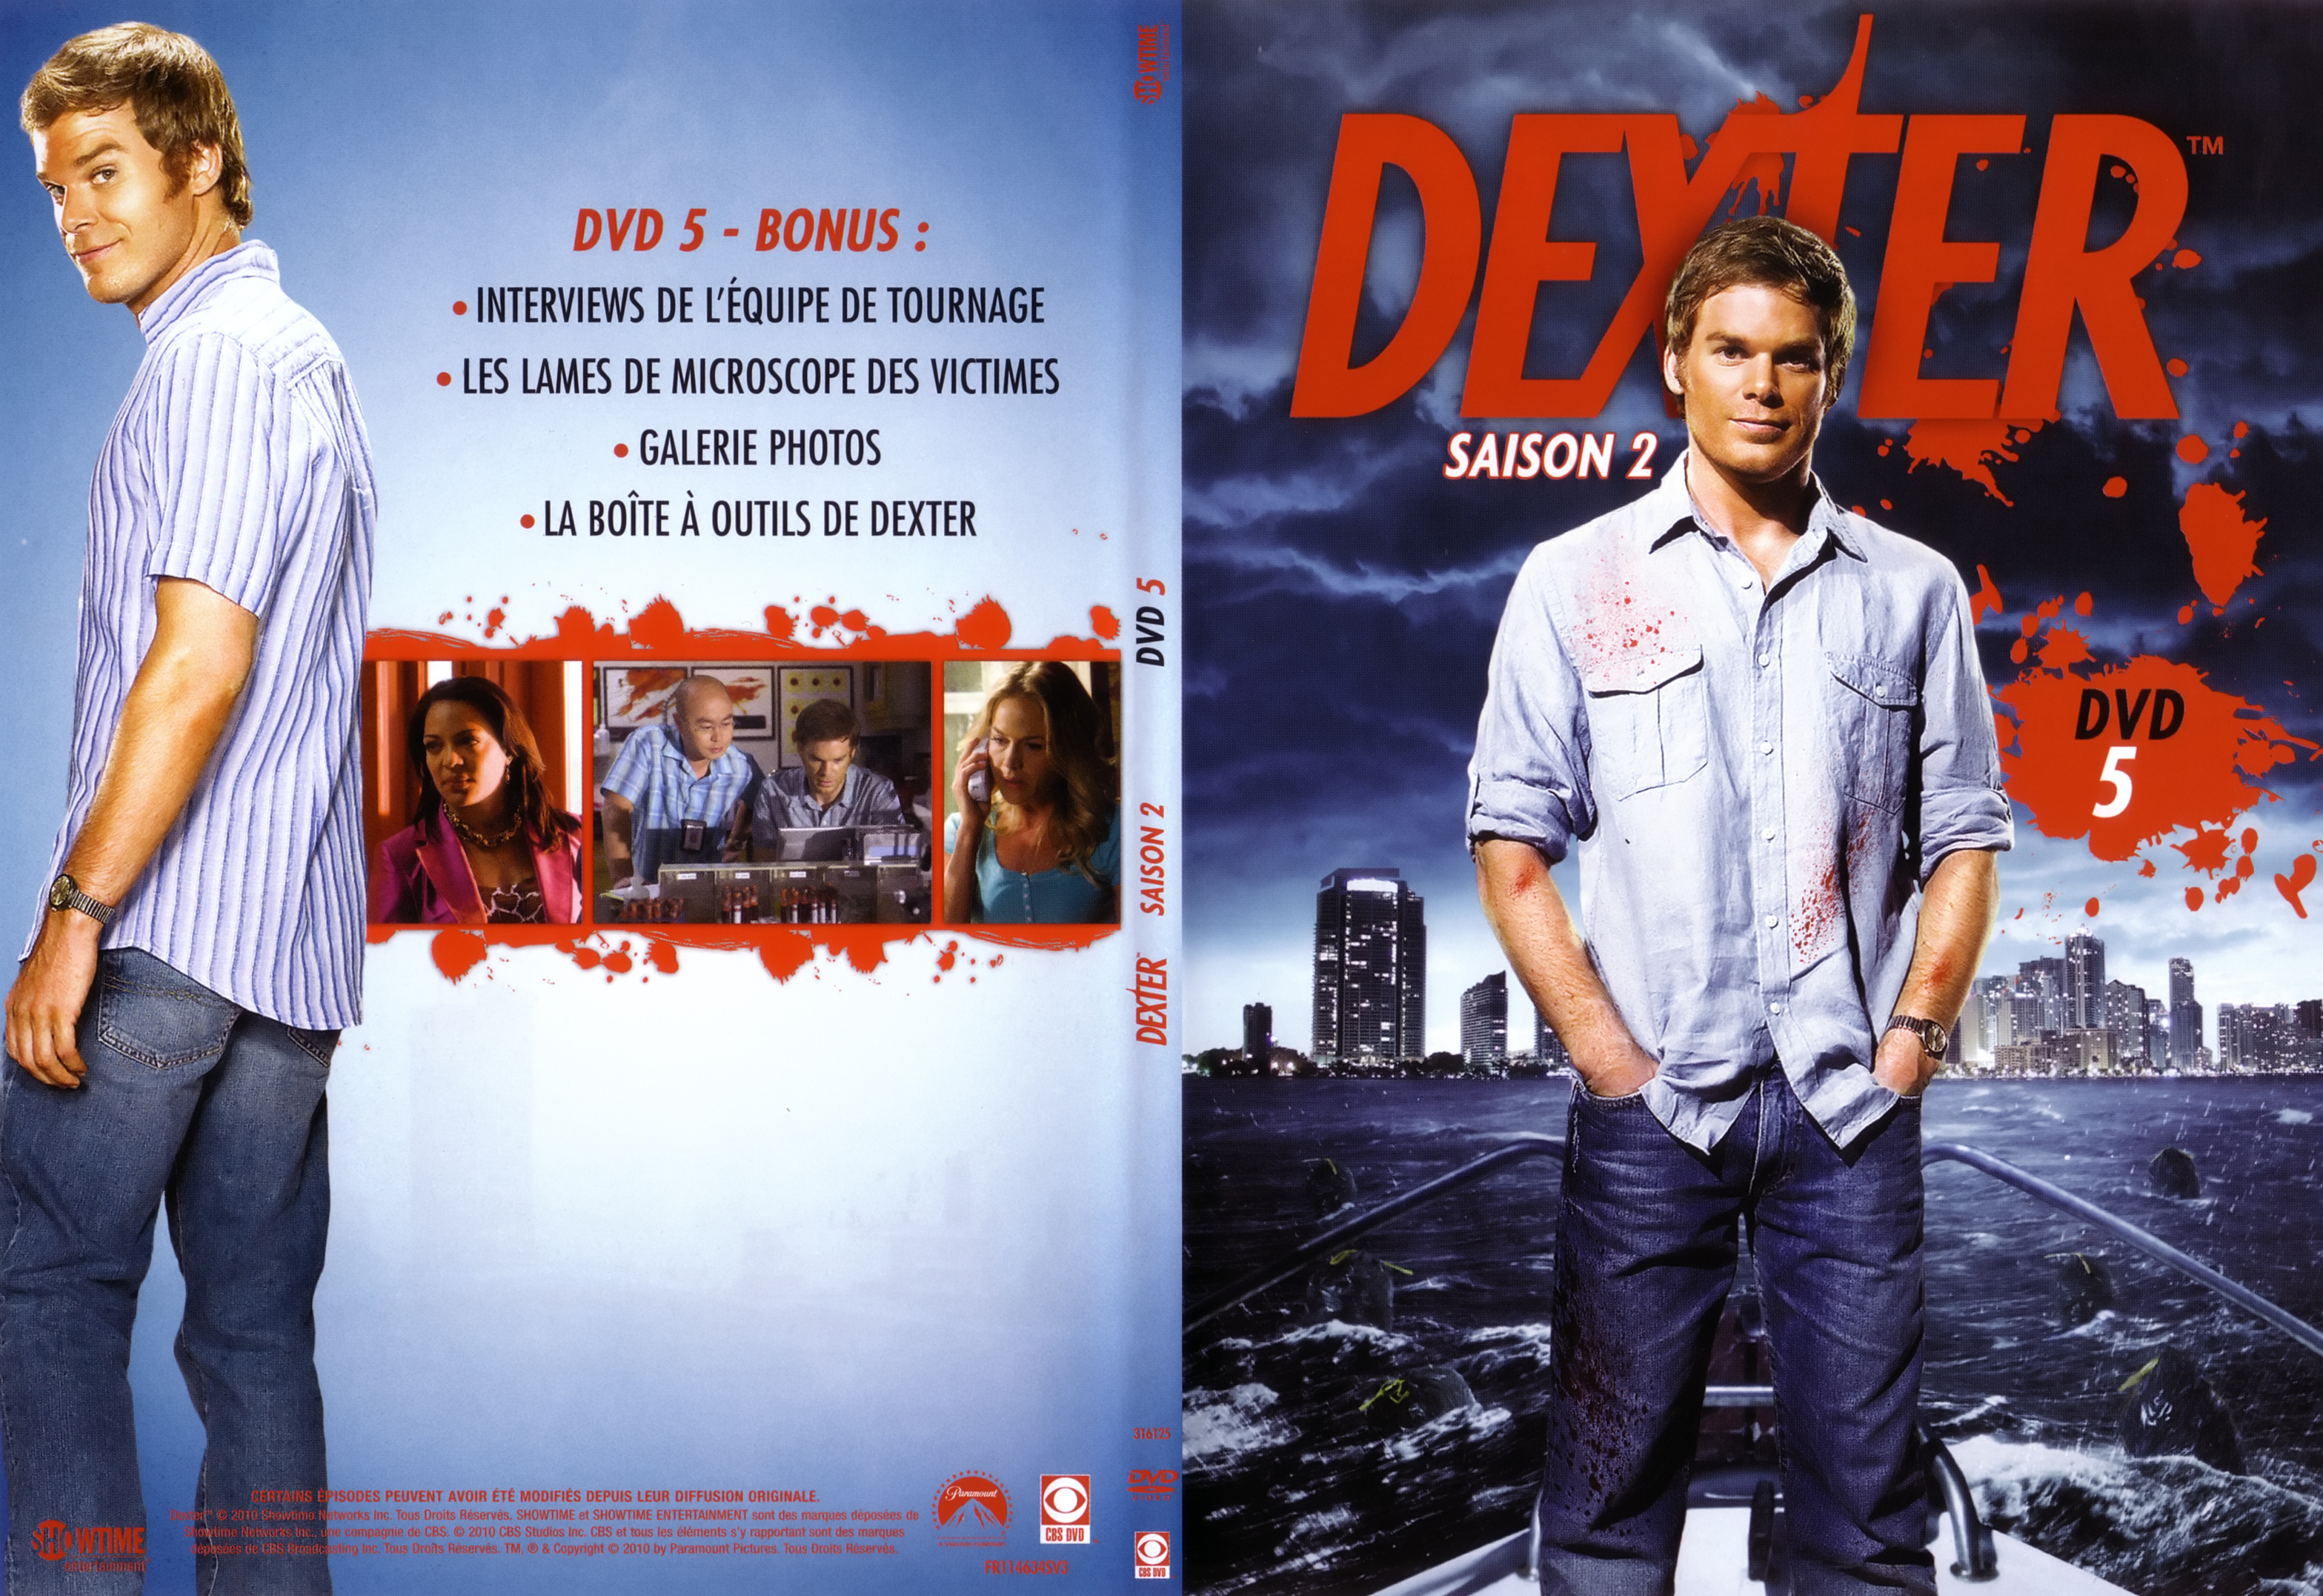 Jaquette DVD Dexter Saison 2 DVD 3